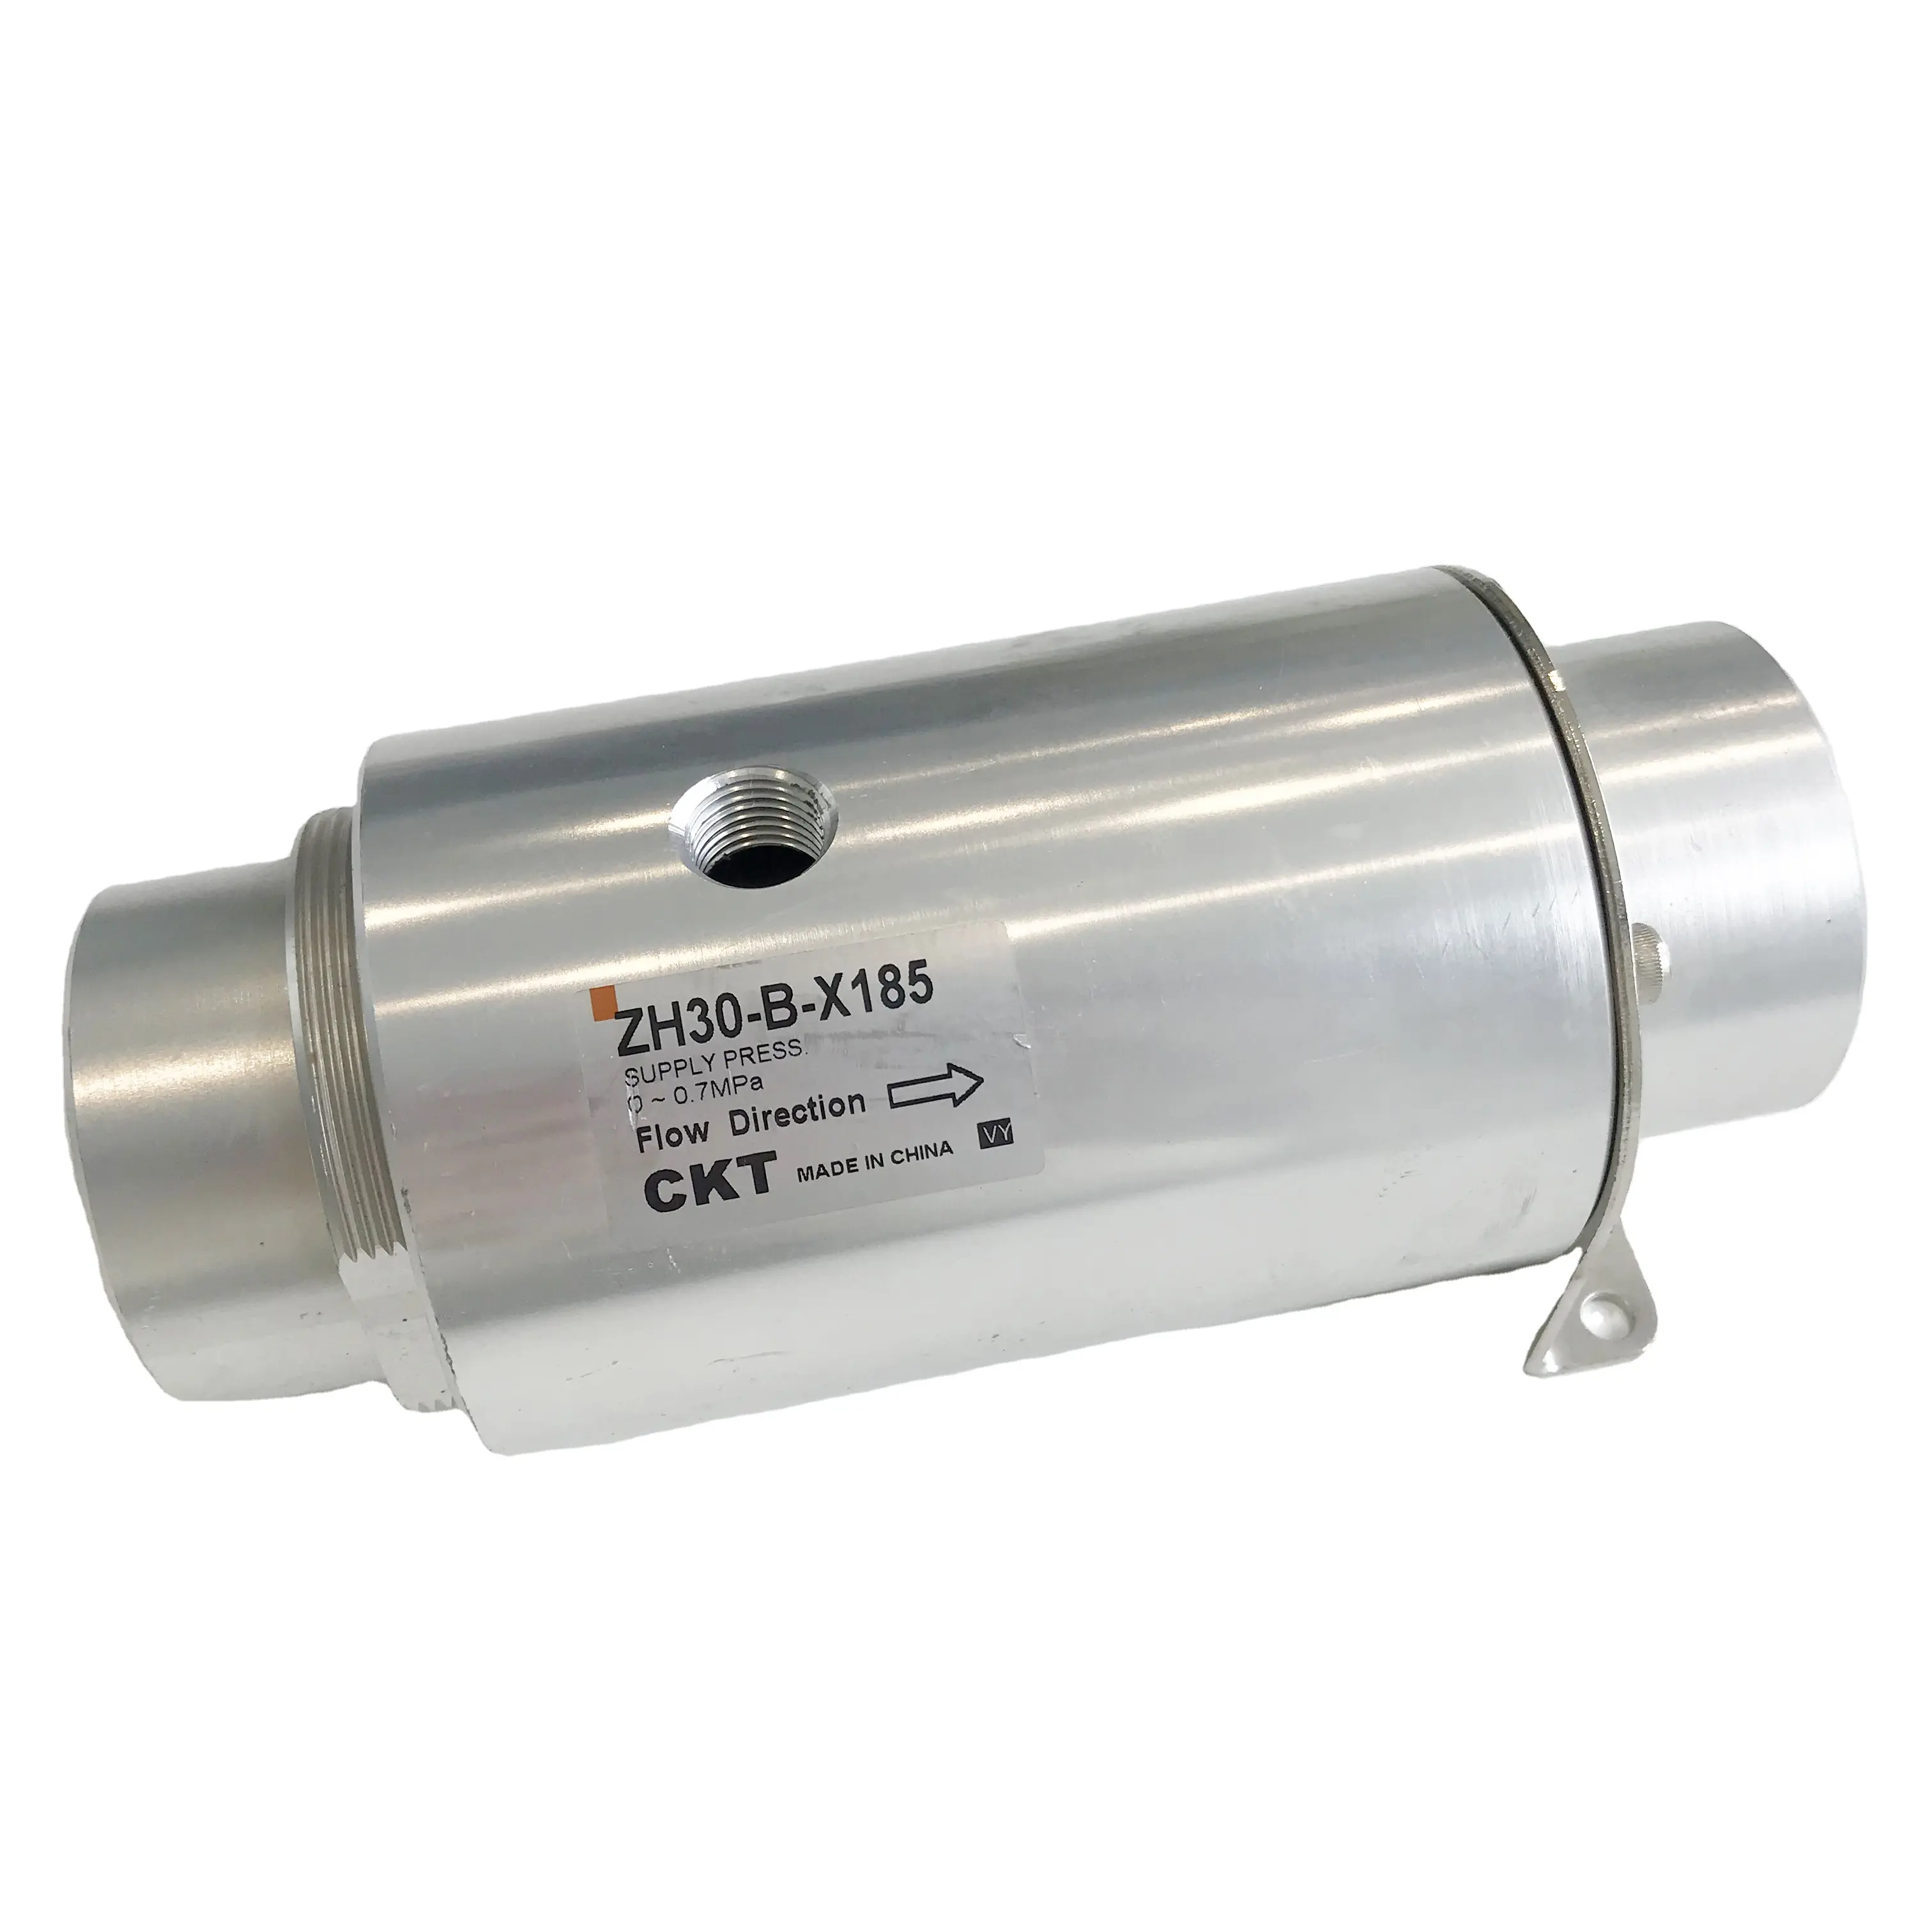 CKT 부류를 가진 압축 공기를 넣은 진공 압력 분사구 공기 증폭기 컨베이어